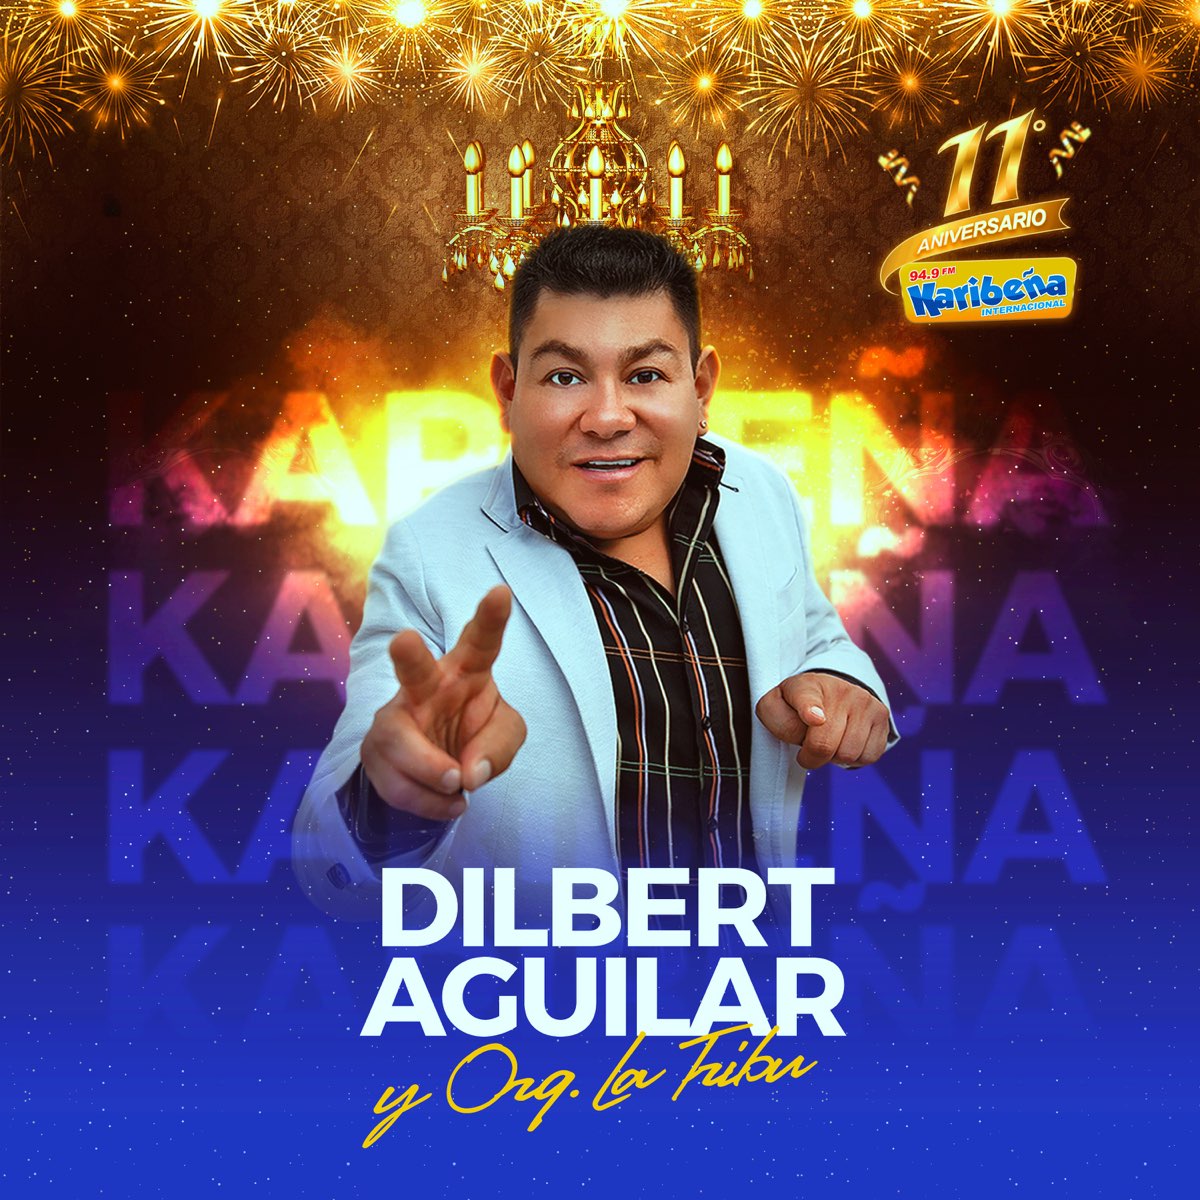 11 Aniversario Radio Karibeña (En Vivo) - Single – Album par Dilbert  Aguilar Y Su Orquesta La Tribu – Apple Music